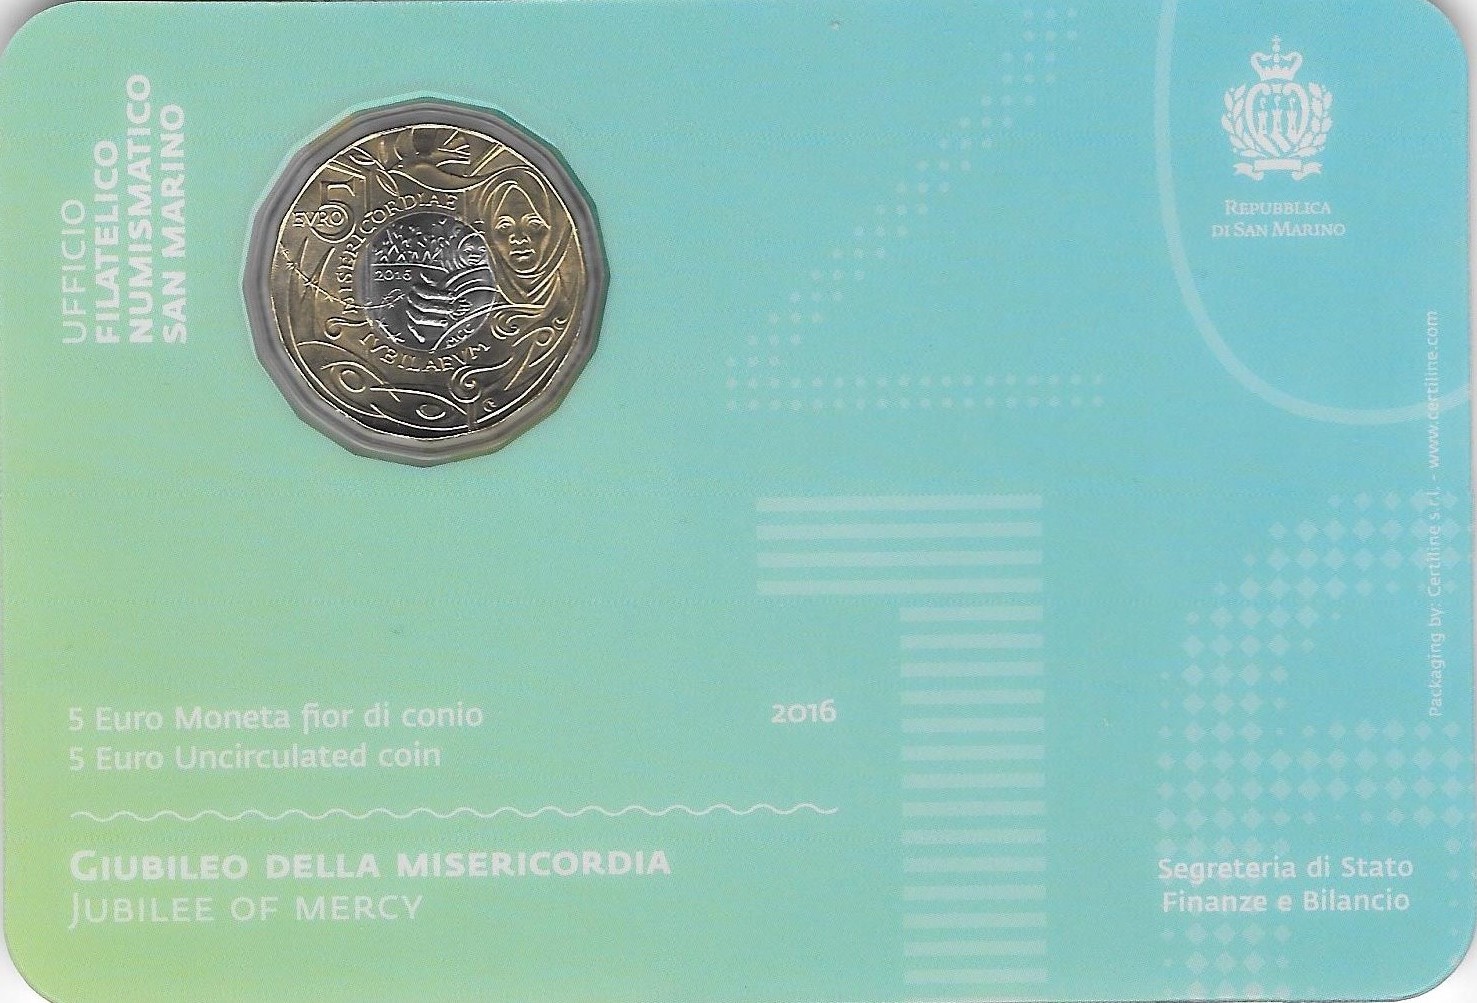 Moneta commemorativa da 5 euro dedicata al "Giubileo della Misericordia" 